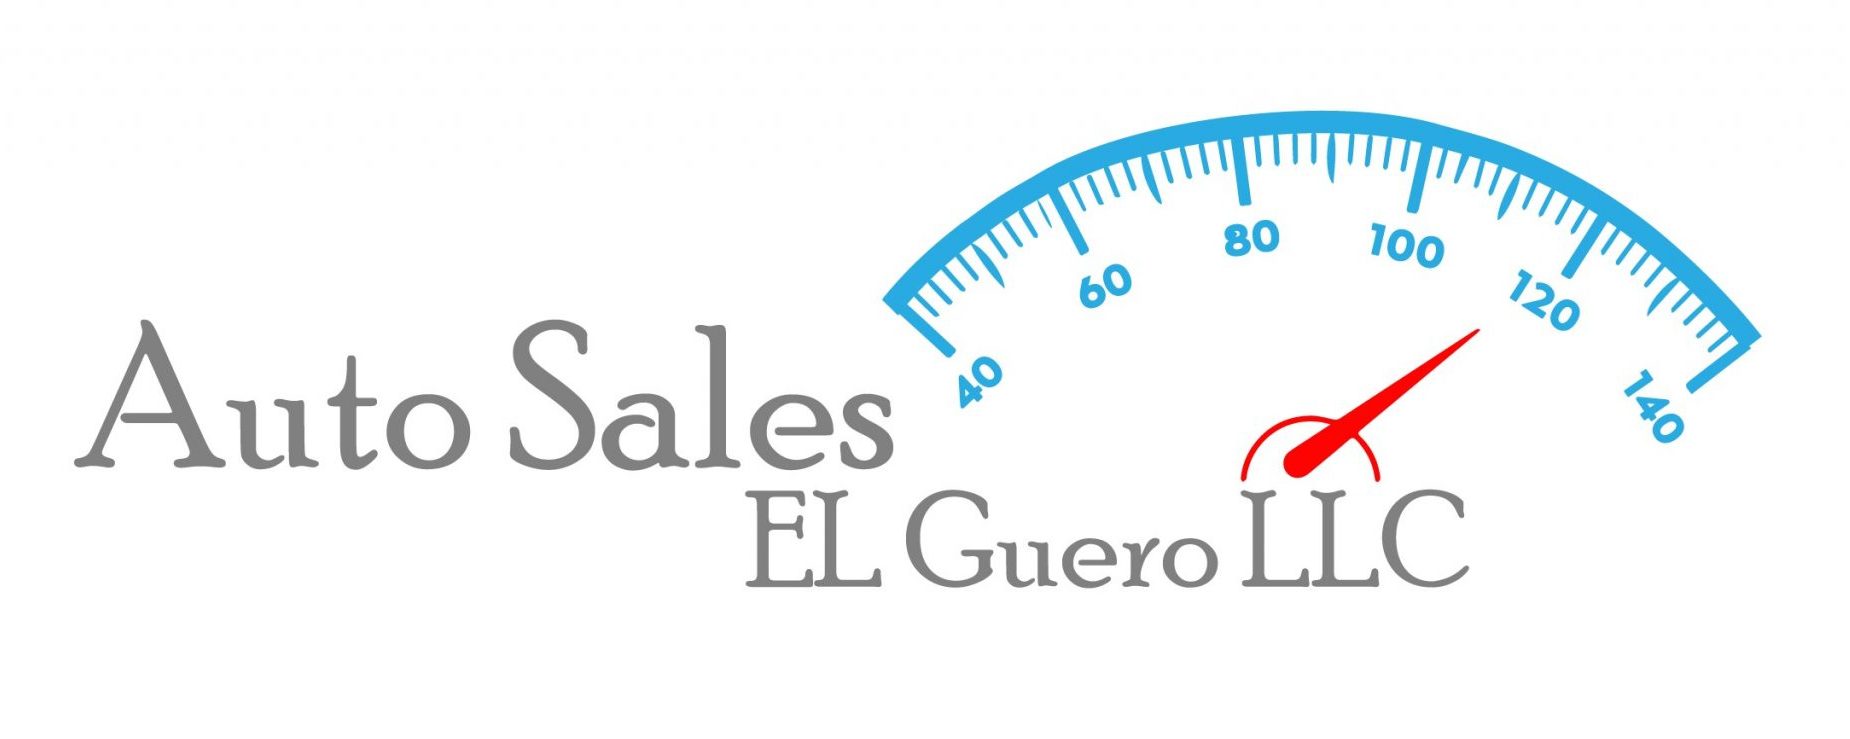 Auto Sales El Guero LLC